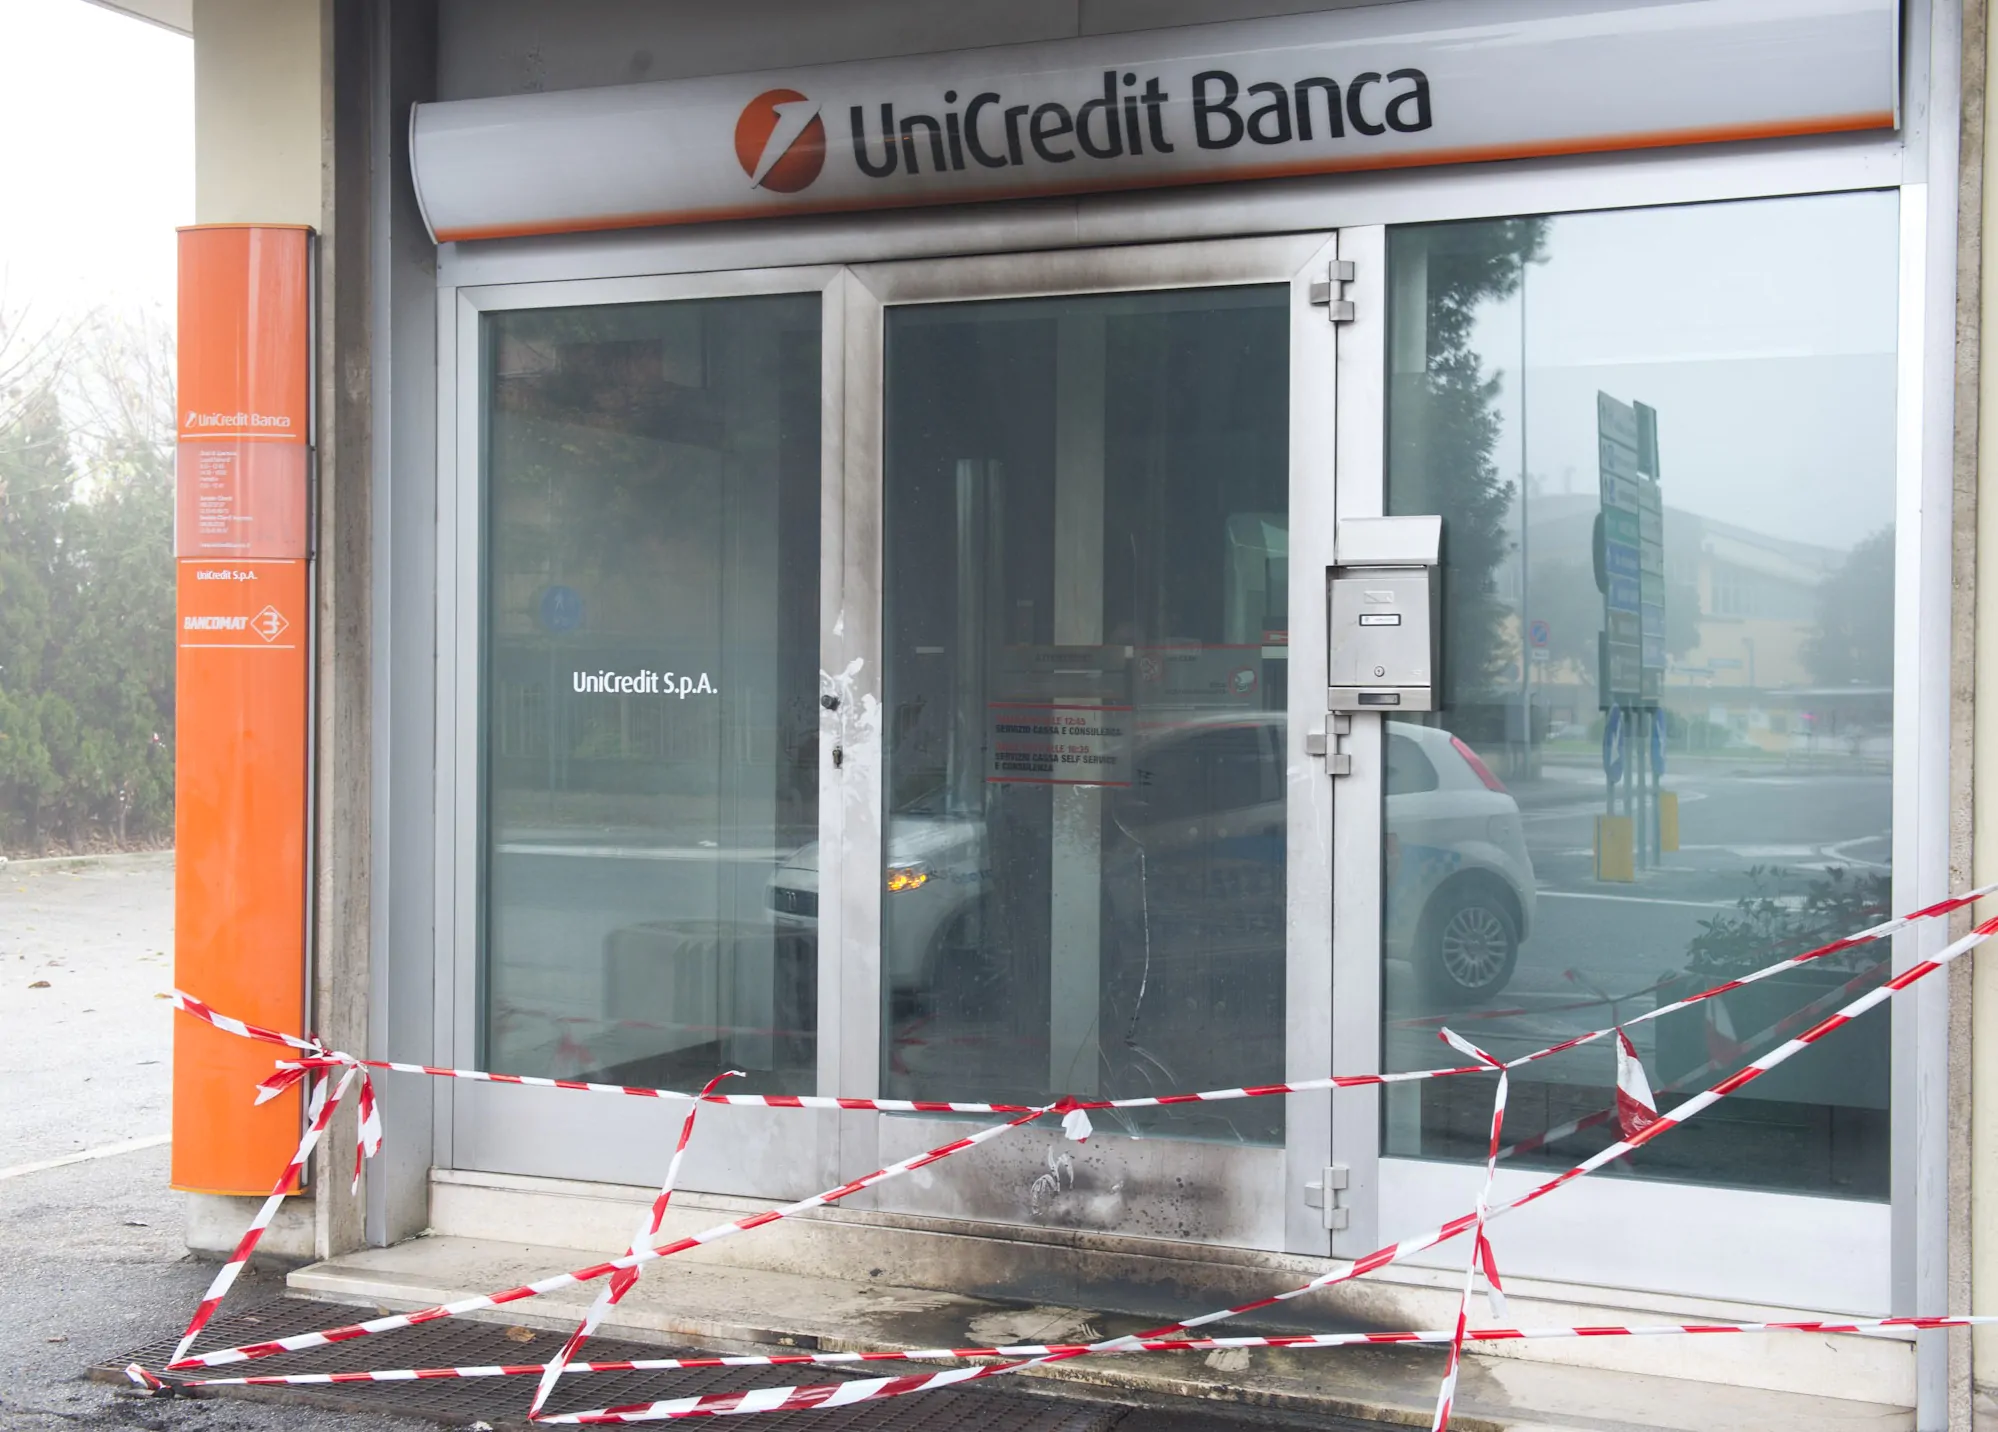 Roma, Unicredit: uomo minaccia di farsi saltare con una bomba, ma è finta